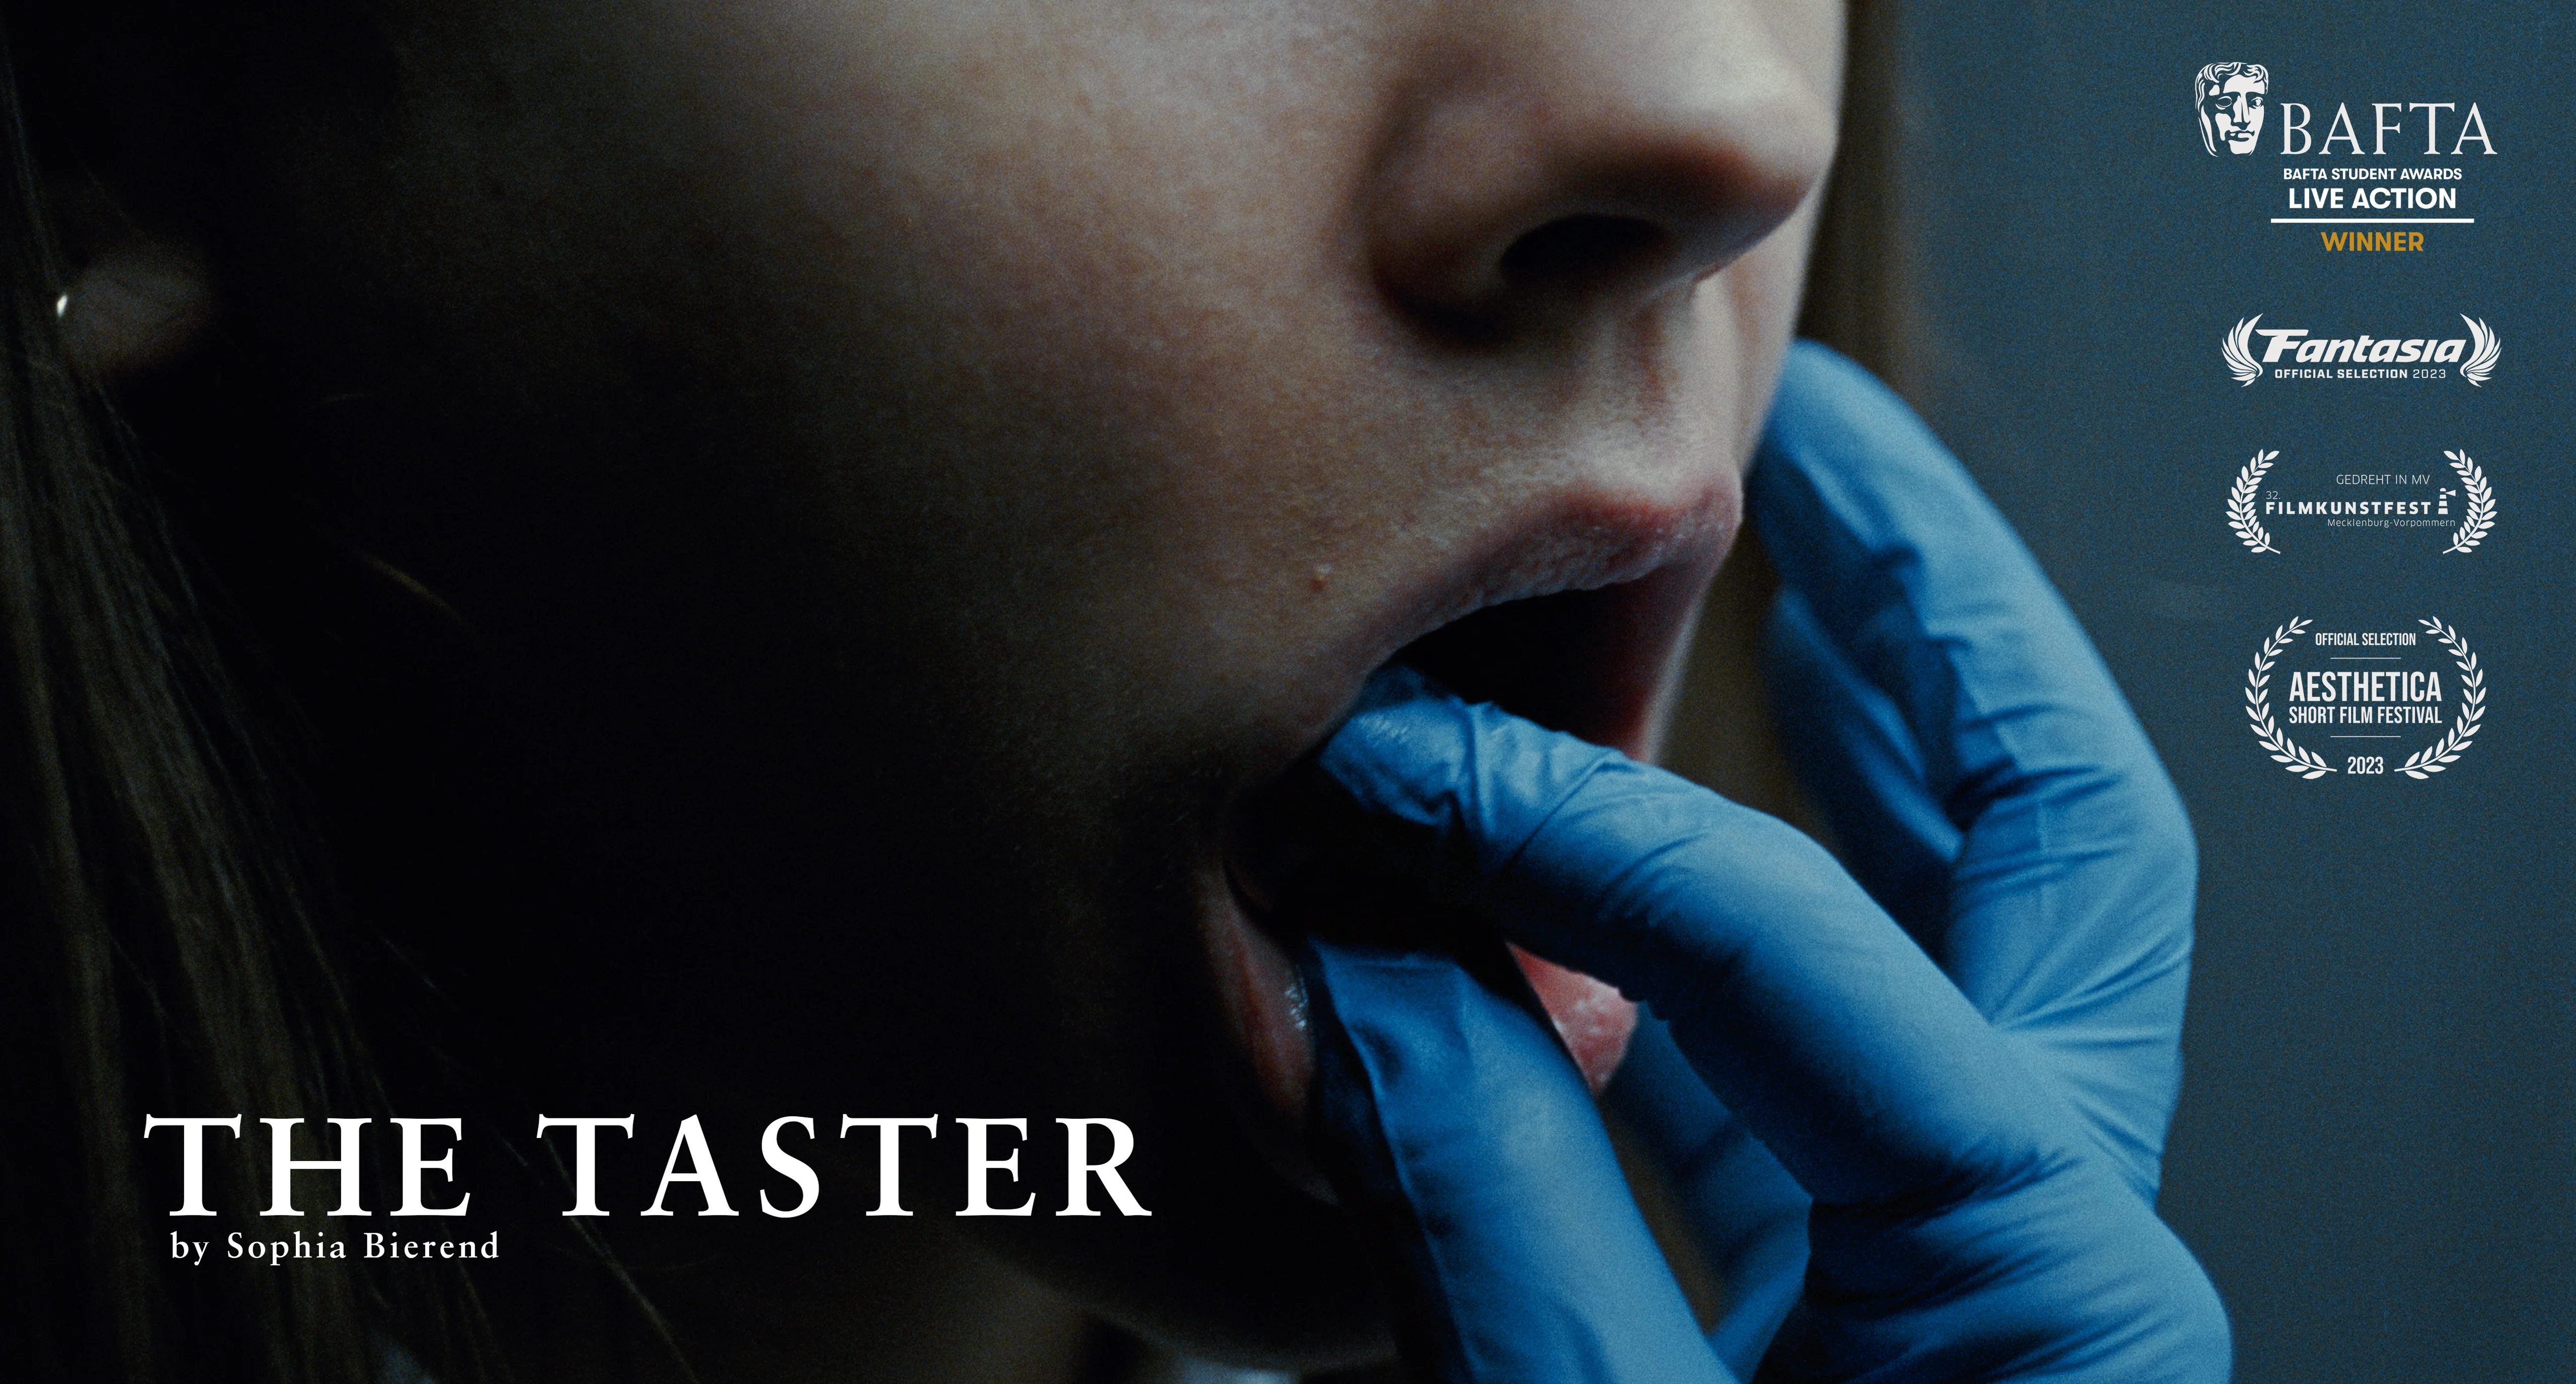 THE TASTER - Short Film (Trailer) on Vimeo